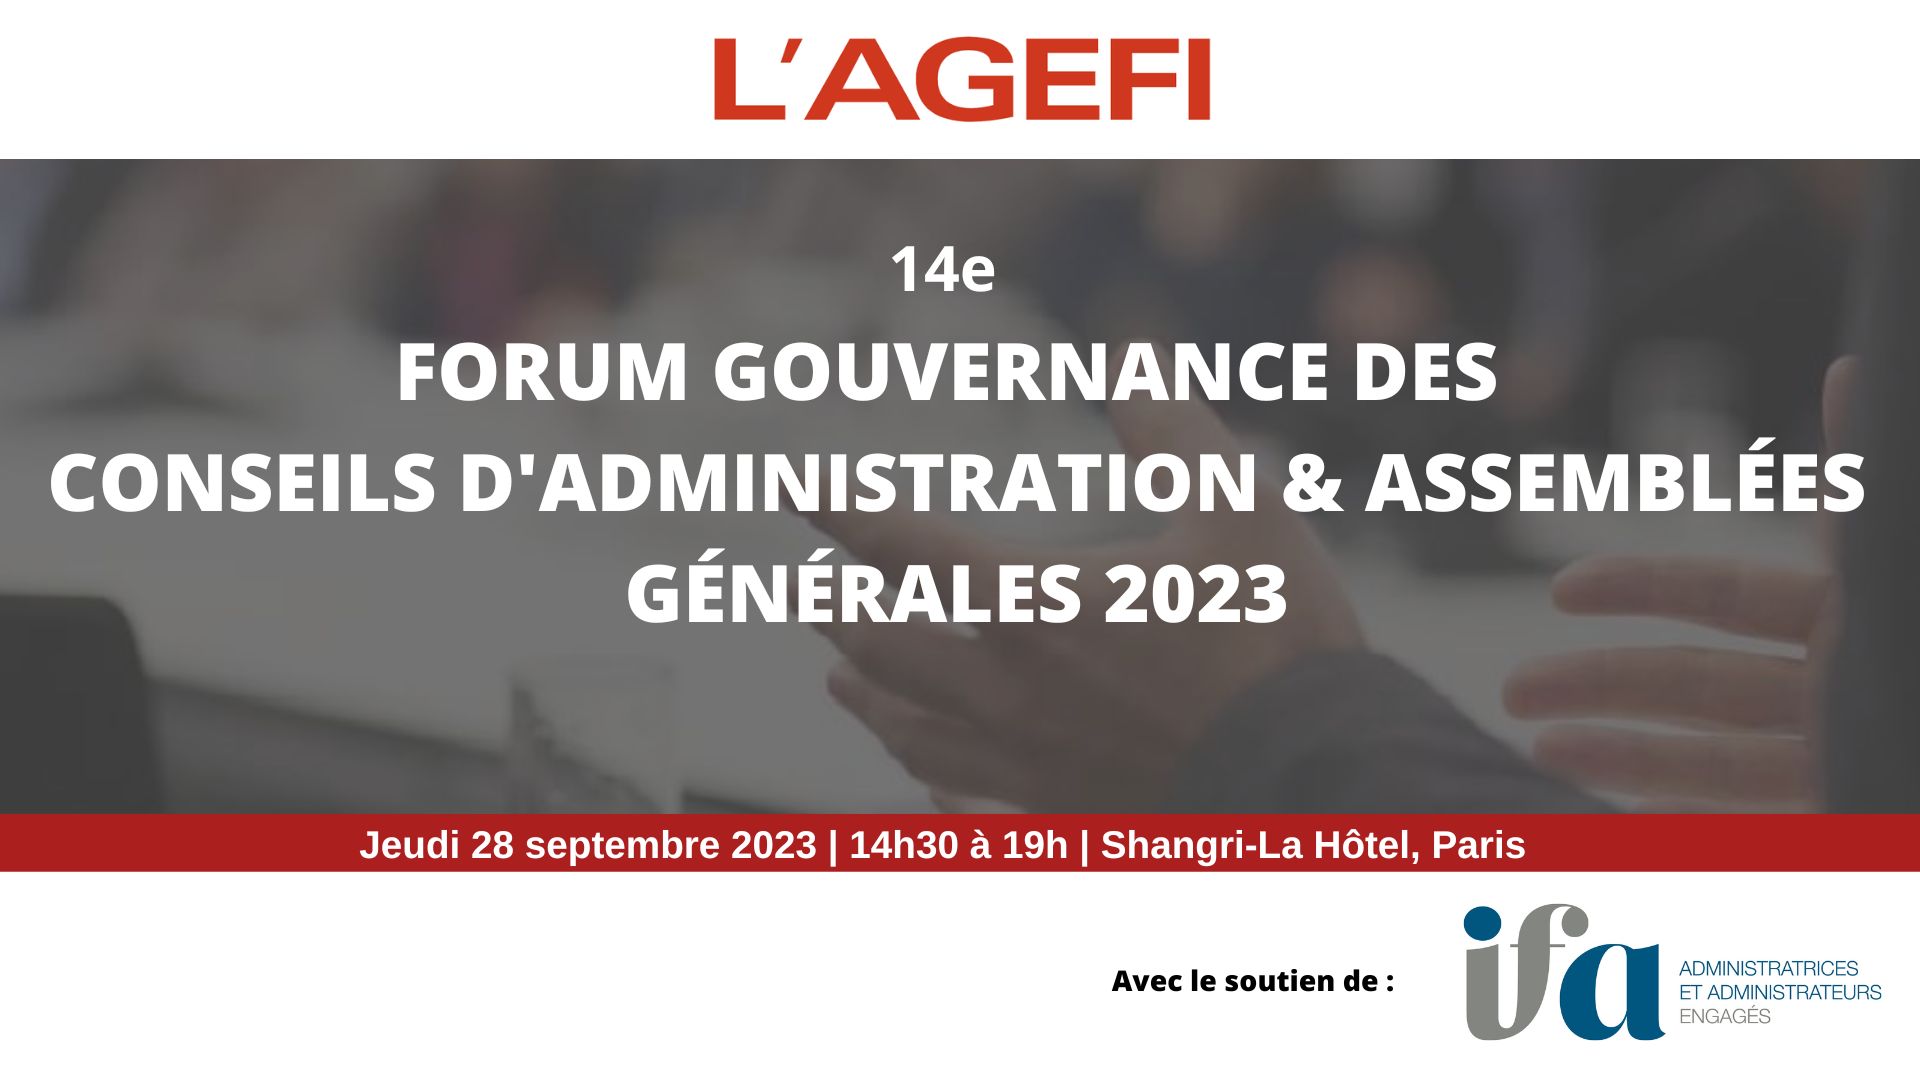 L’IFA est partenaire du Forum Gouvernance des Conseils d’Administration & Assemblées Générales 2023 de L’AGEFI